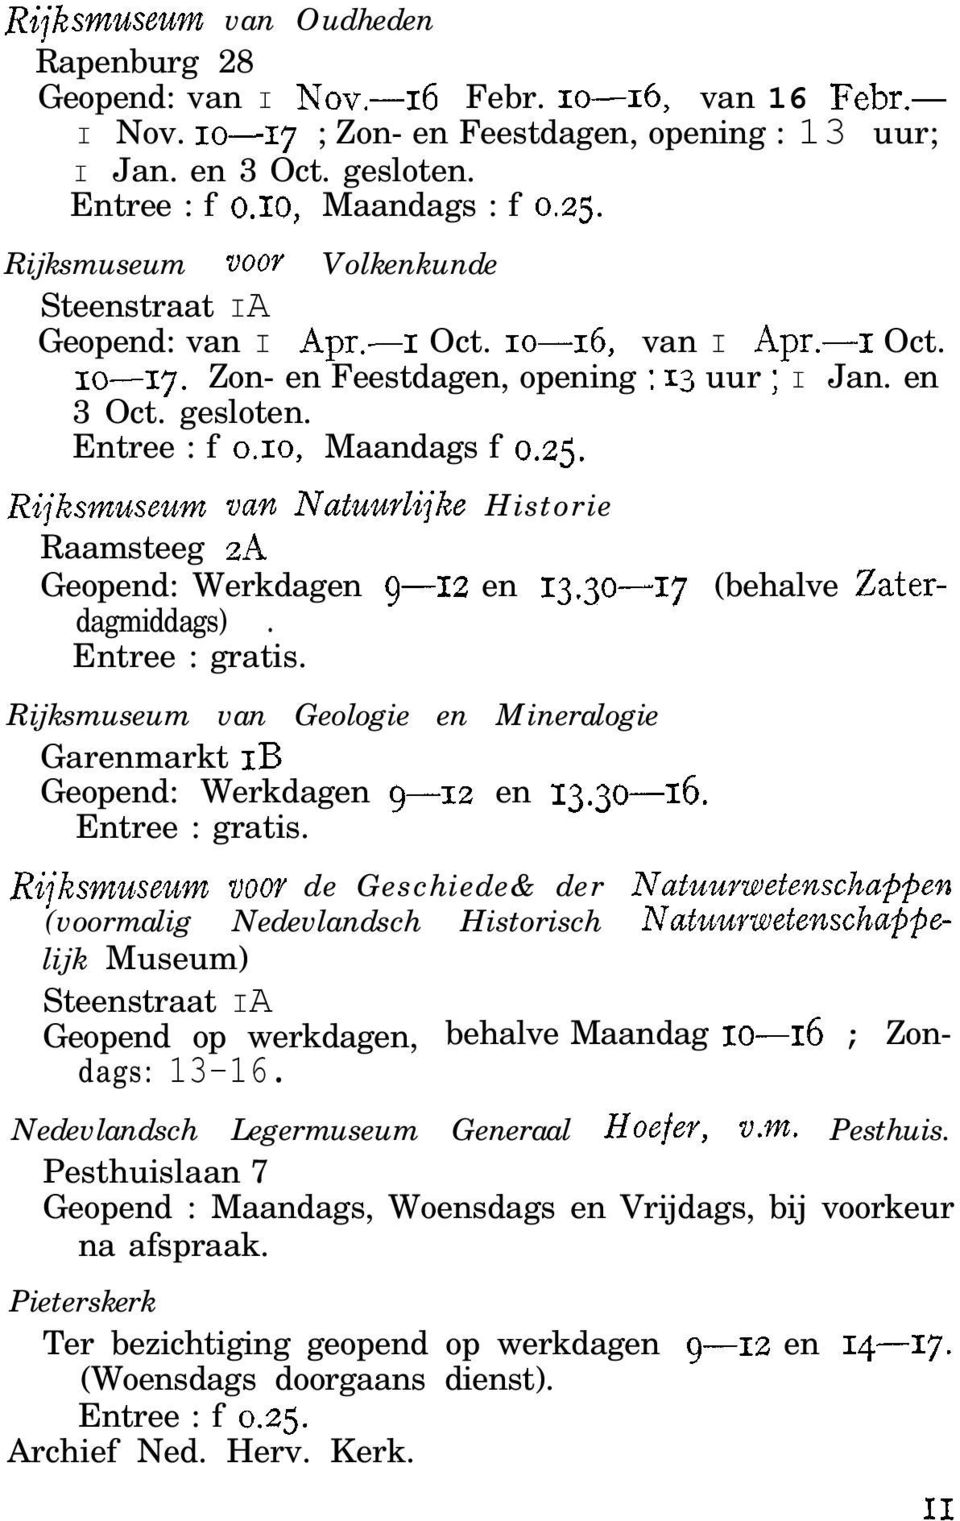 Entree : f 0.10, Maandags f 0.25. Rijksmuseum van Natuurlijke Historie Raamsteeg 2A Geopend: Werkdagen 9-12 en 13.30-17 (behalve Zaterdagmiddags). Entree : gratis.